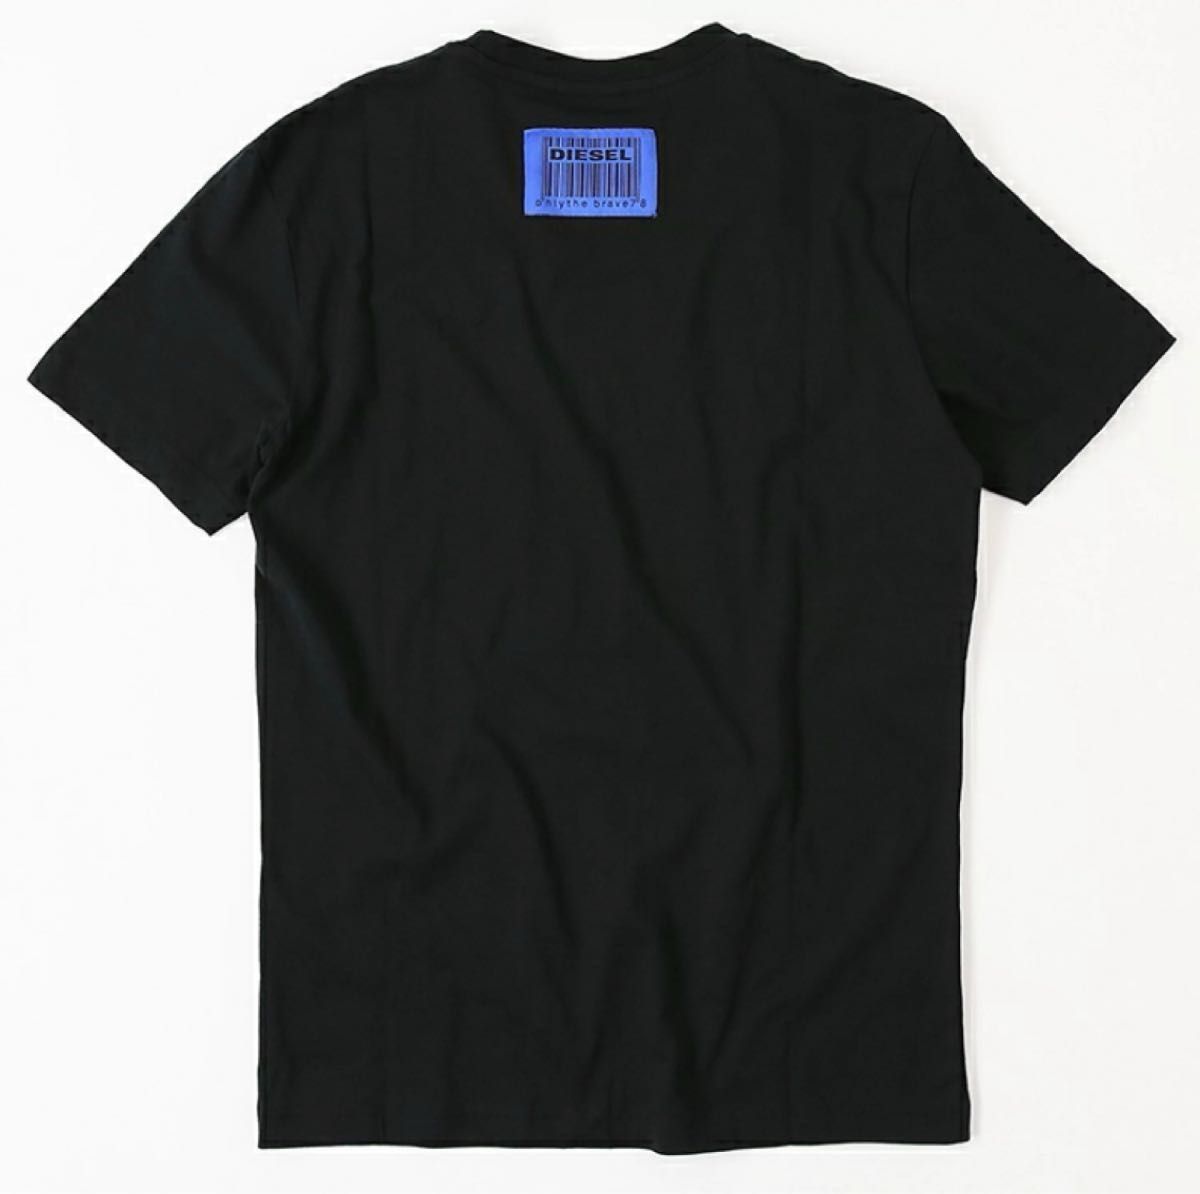 【新品】DIESEL ディーゼル ③NOW HEREフロント刺繍&バックロゴTシャツ BLACK size S 